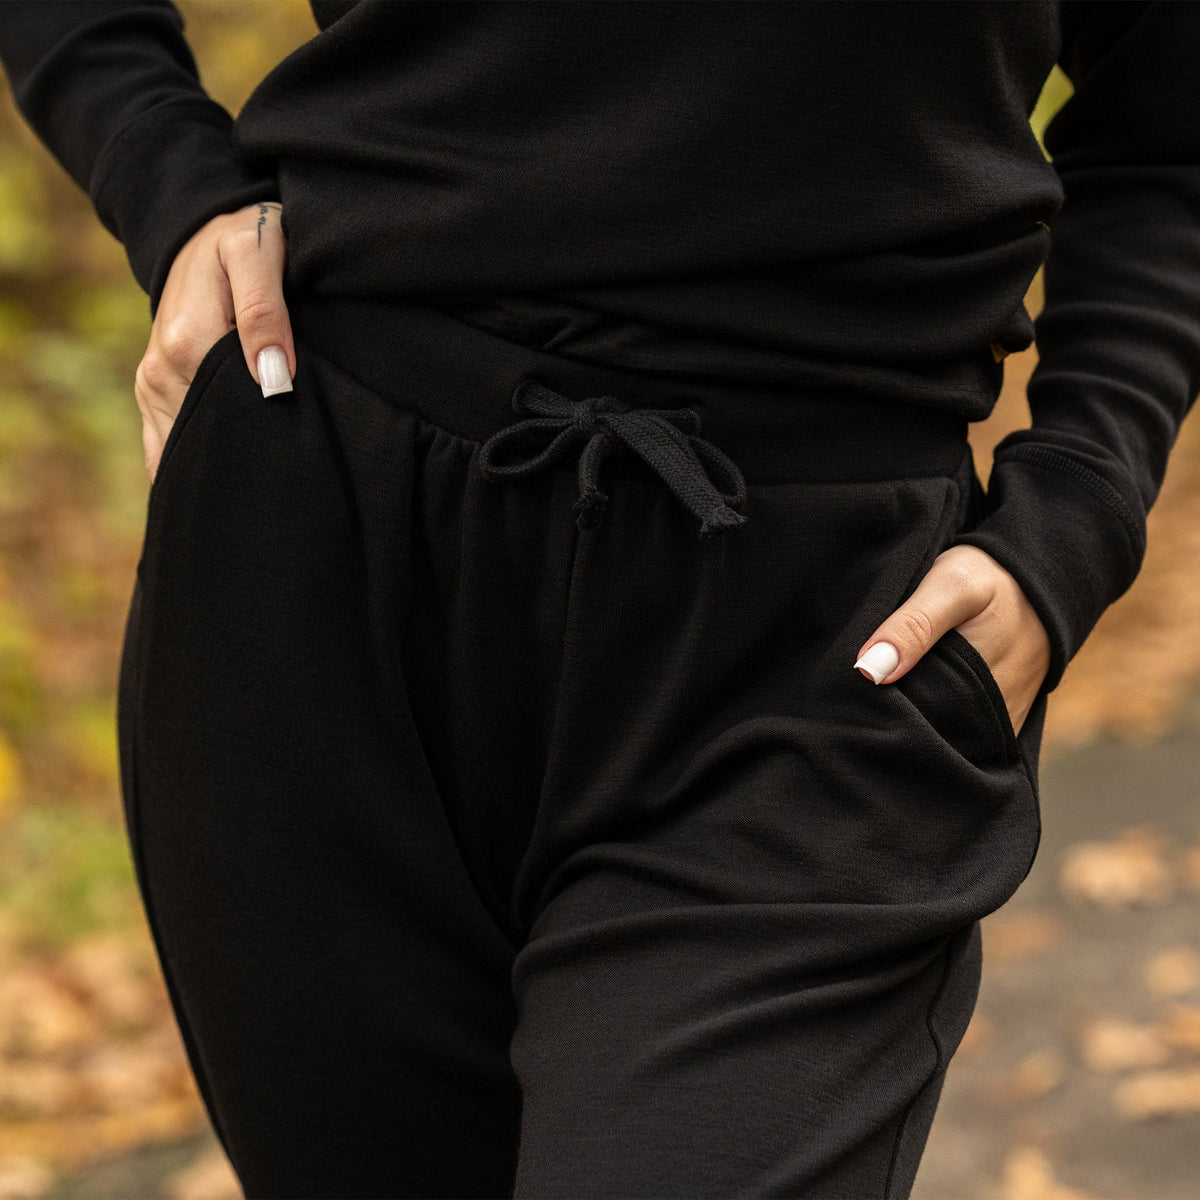 MENIQUE 100% Merino Wool Womens Zip Neck Top & Sweatpants 2-Piece Black